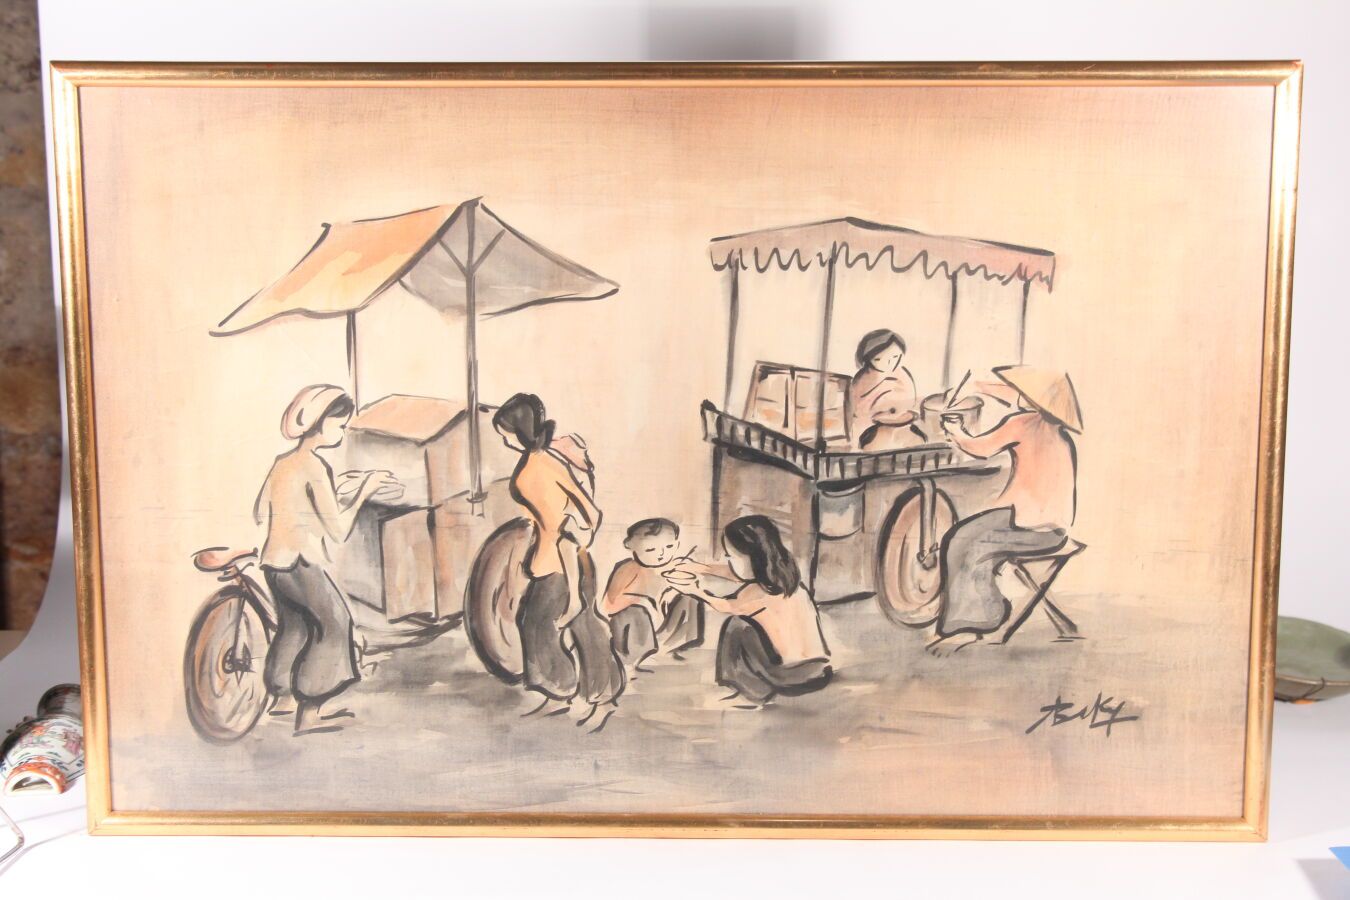 Null 越南，20世纪
两幅丝绸上的水墨画
一幅描绘的是热闹的市场场景，另一幅是渔夫，署名Baky
54 x 86厘米和39 x 18厘米